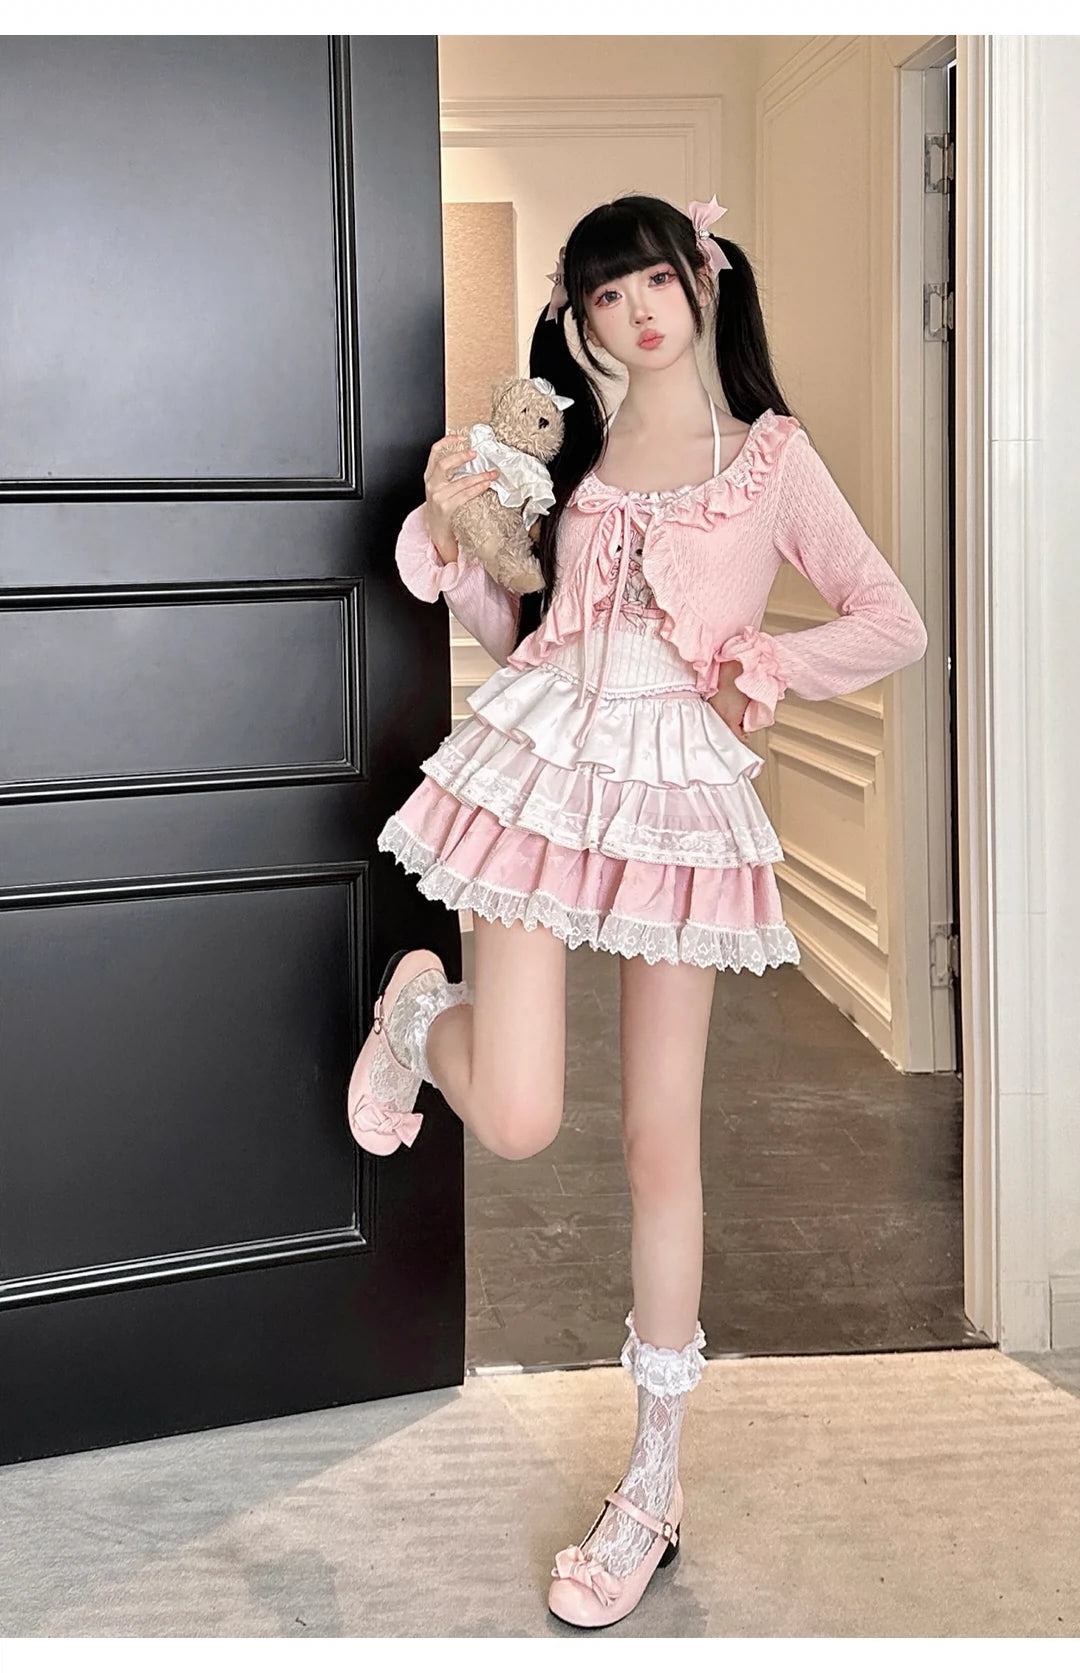 Ryousangata Skirt Set Pink Cardigan White Straps Top 37008:548370